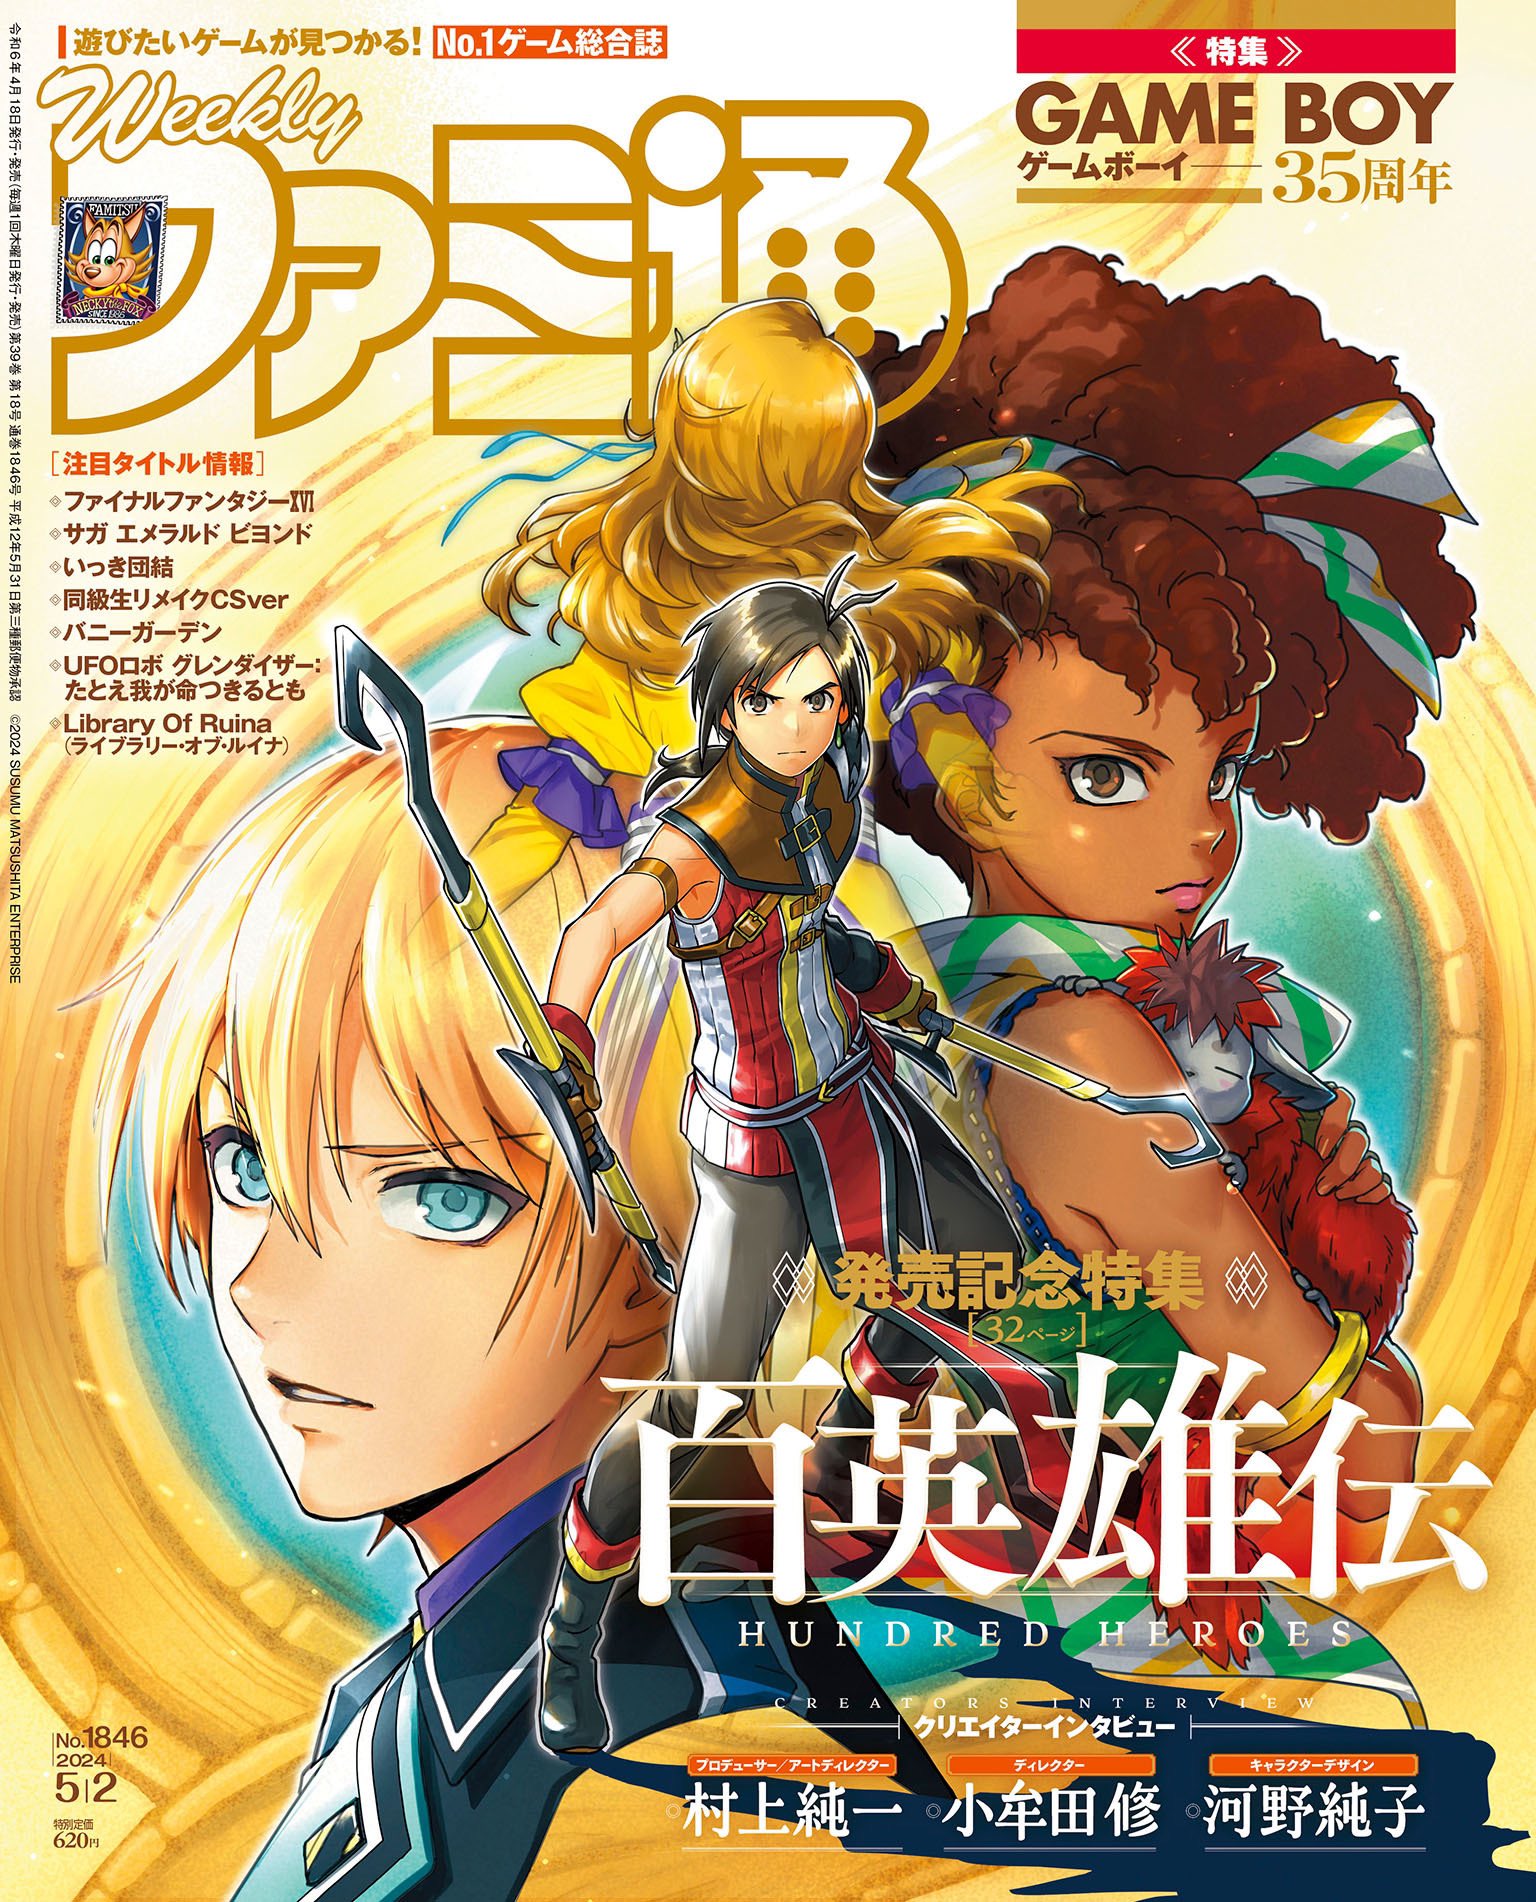 《百英雄傳》登上本周Fami通雜誌封面畫風十分精緻